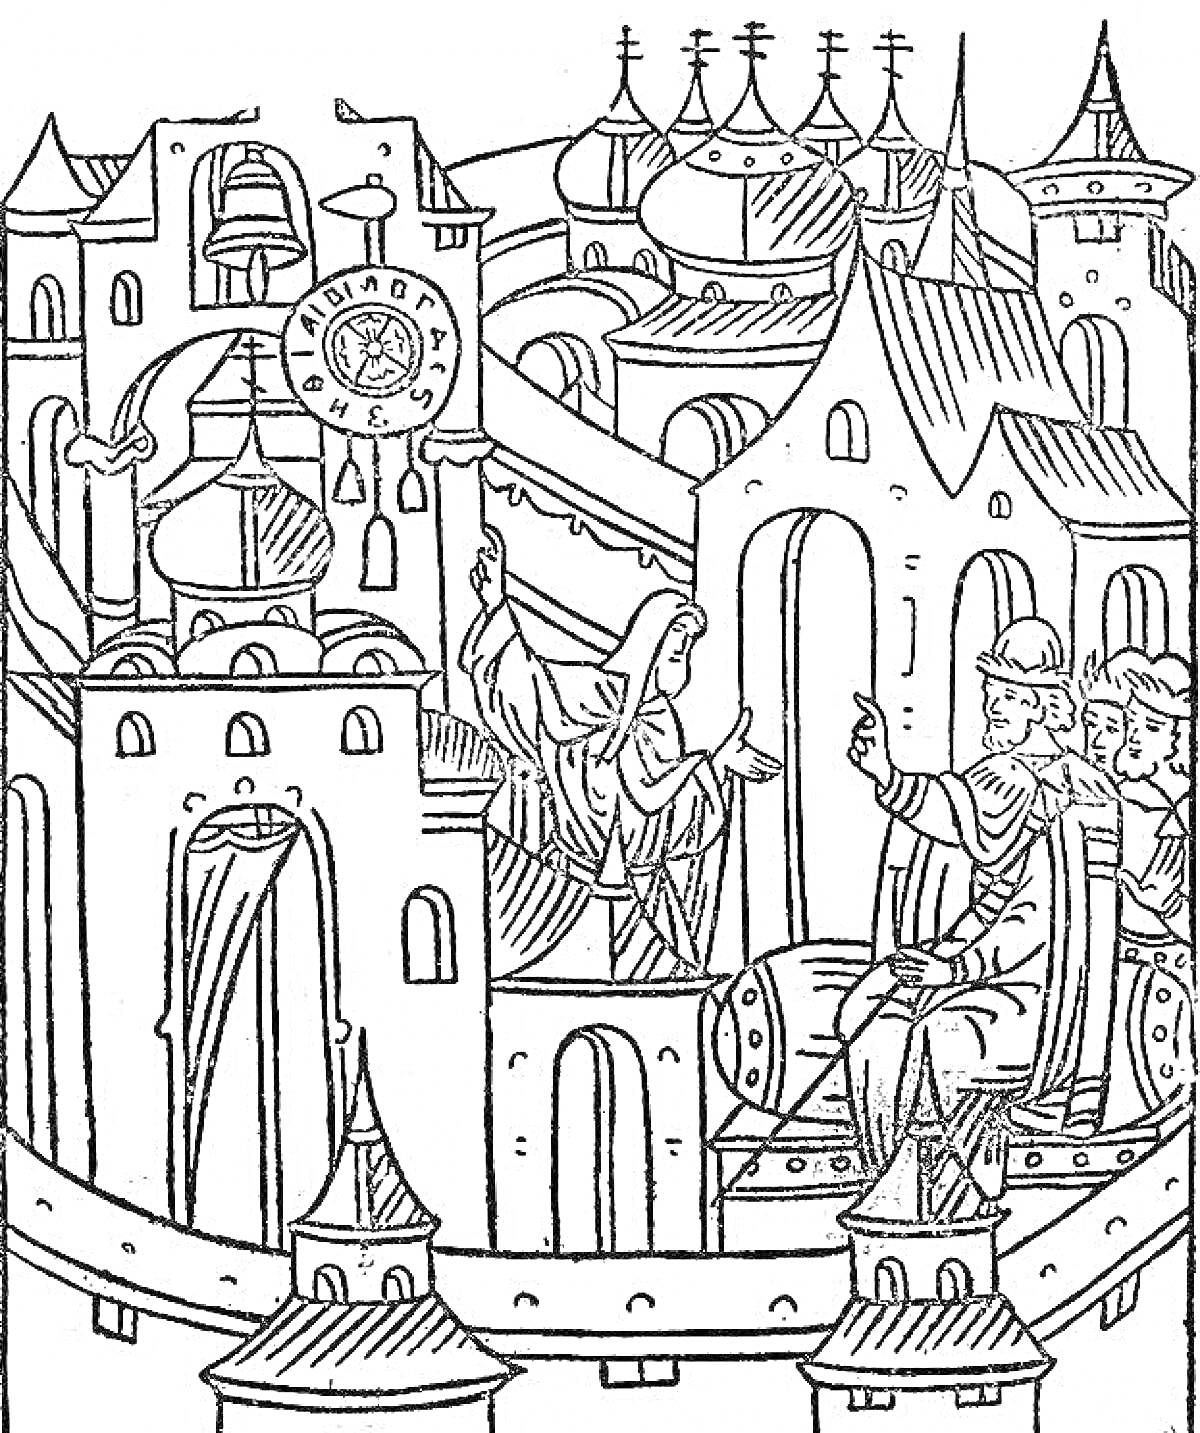 Раскраска Миниатюра с изображением средневекового города с башнями, зданиями, куполами, фигурой человека на троне и фигурами на стене